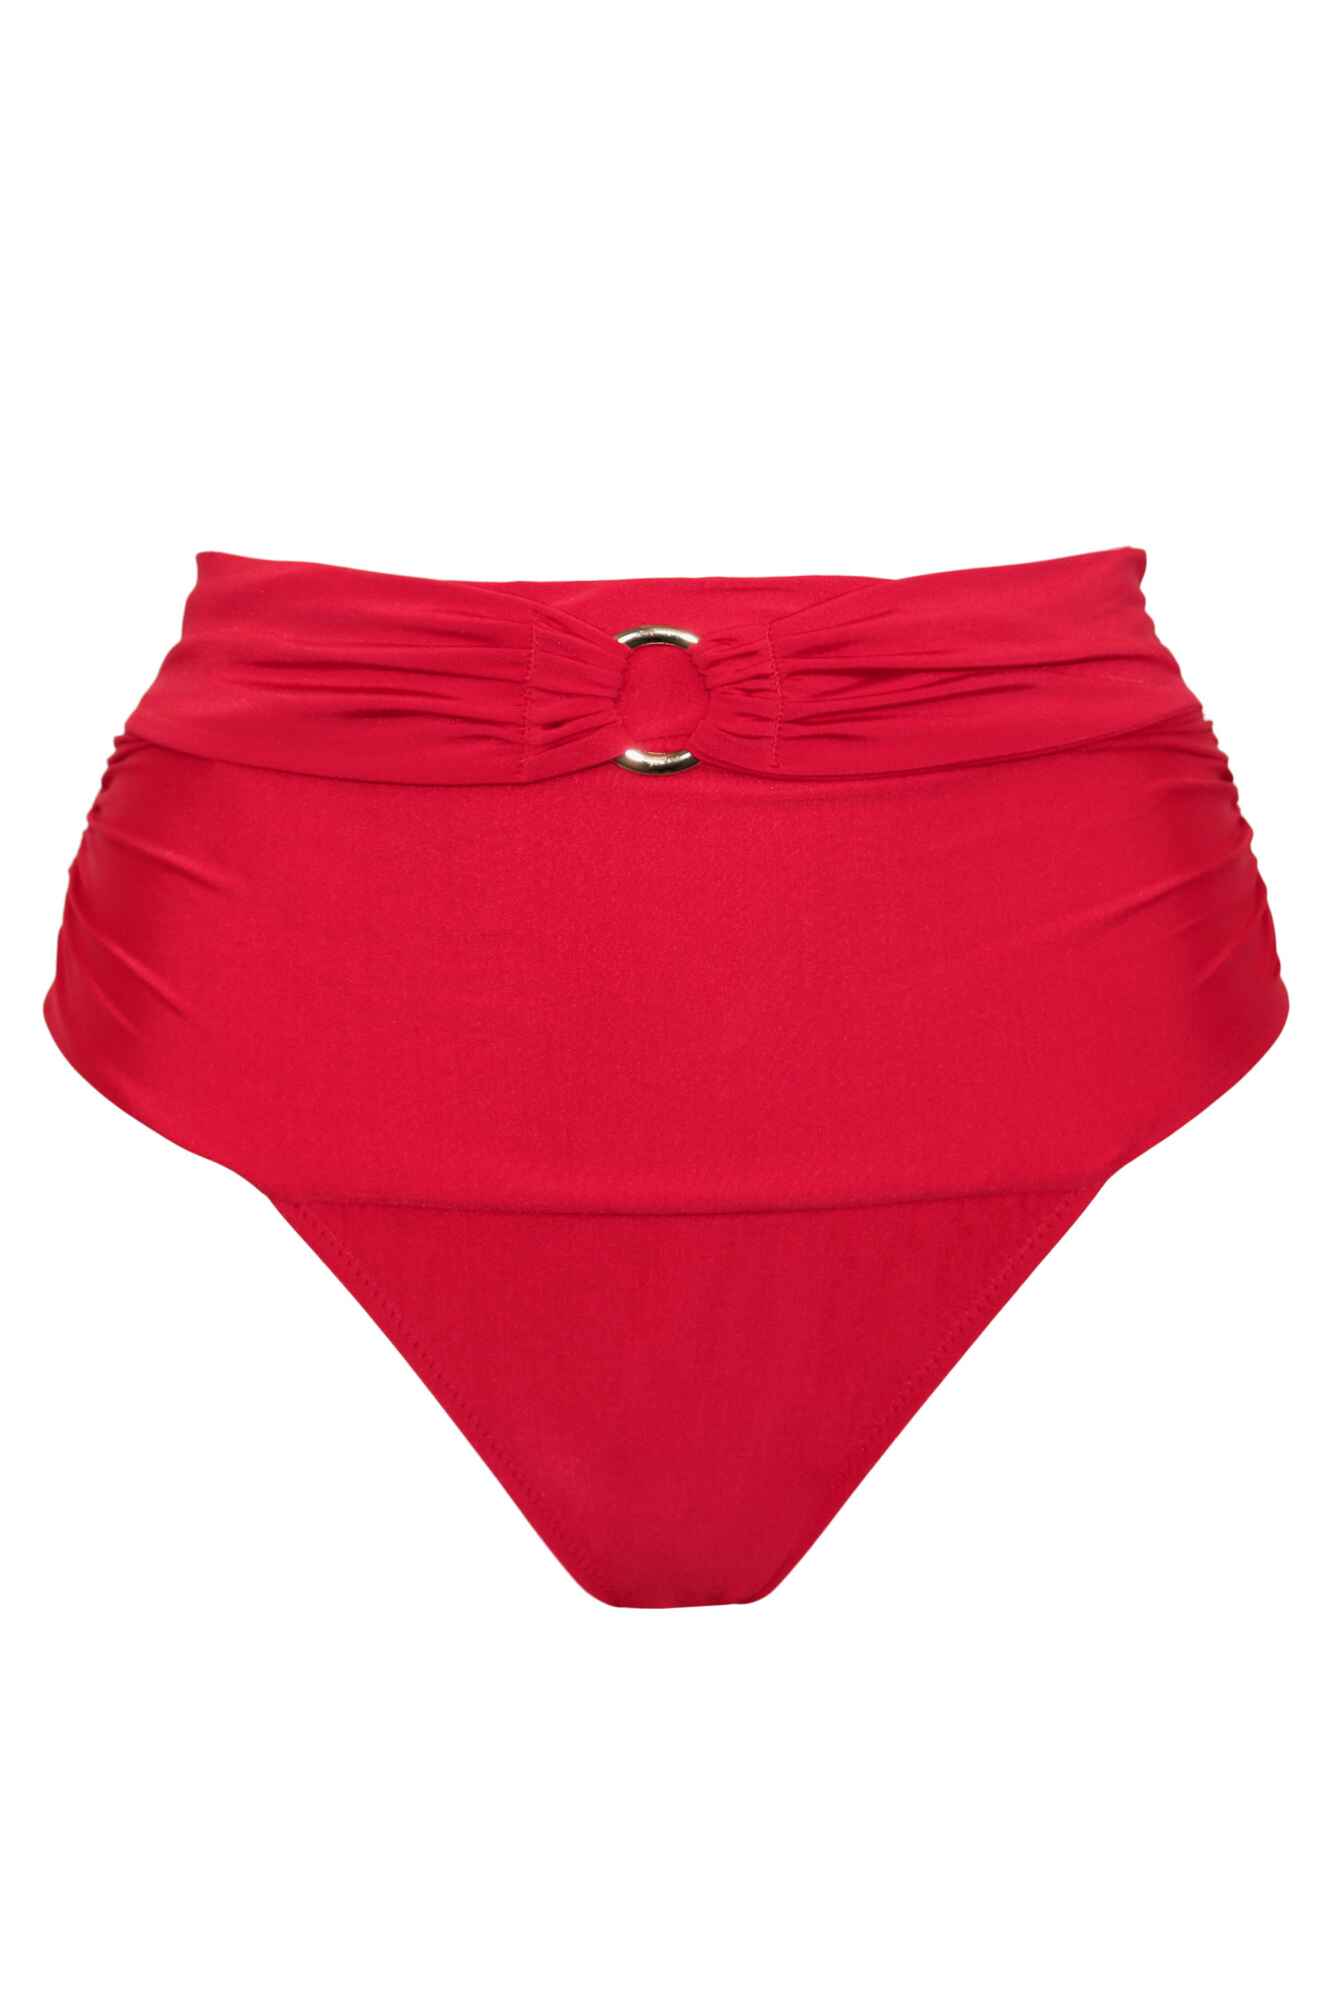 Santa Cruz Super High Waist Bikini Brief In Red - Pour Moi